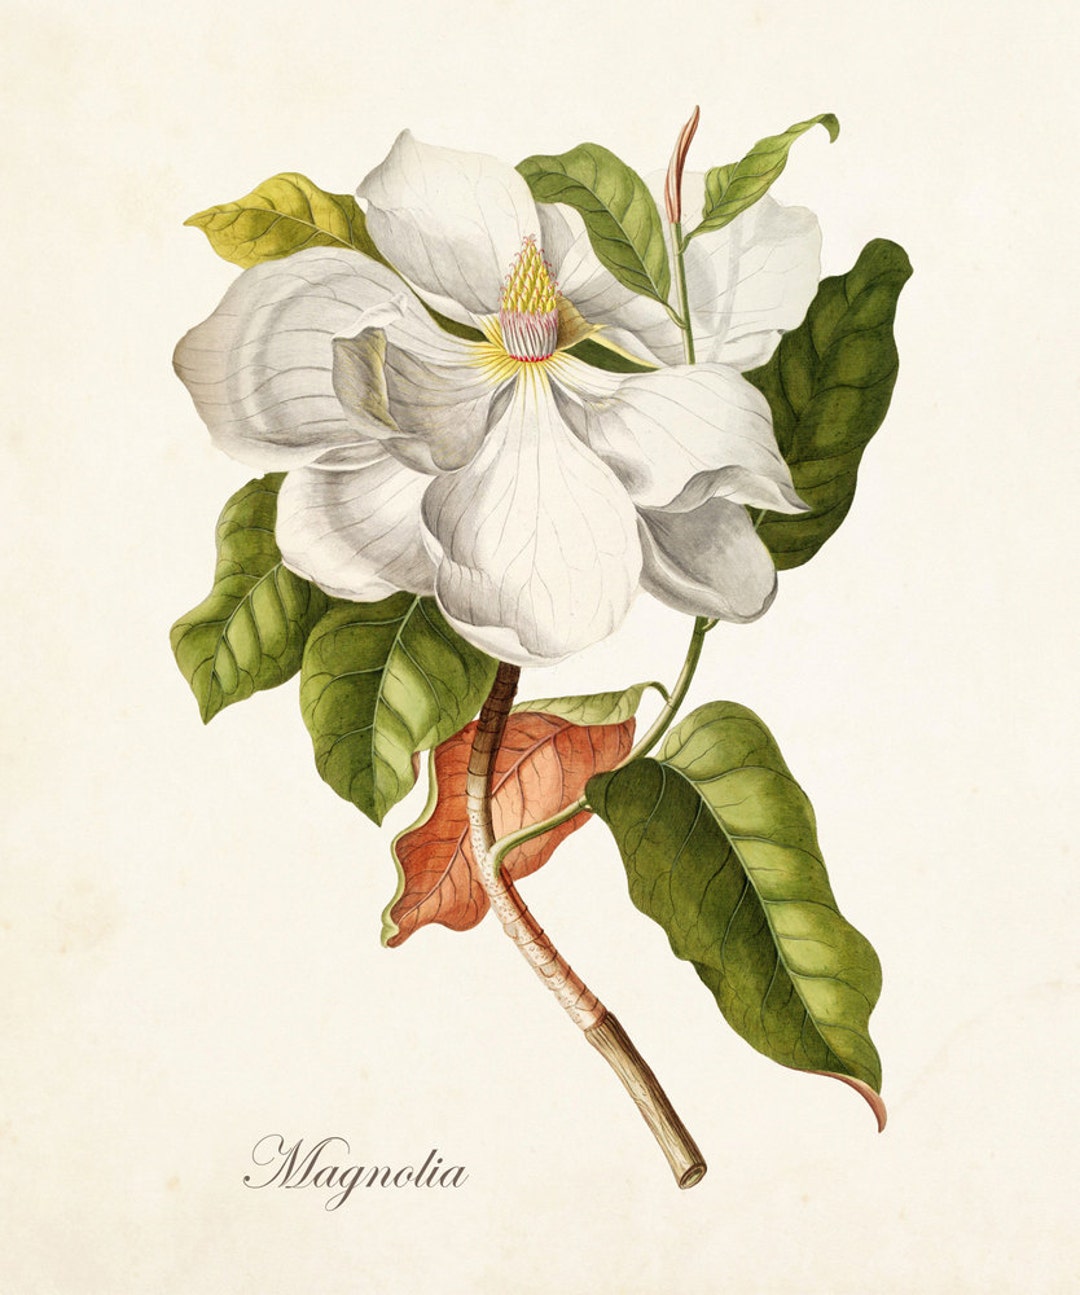 Magnolia Print No. 1, Botanical Print,giclee, Art Print, Antique Botanical, print, Poster, Wall Art, Vintage Botanical, Illustration, Collage - Etsy